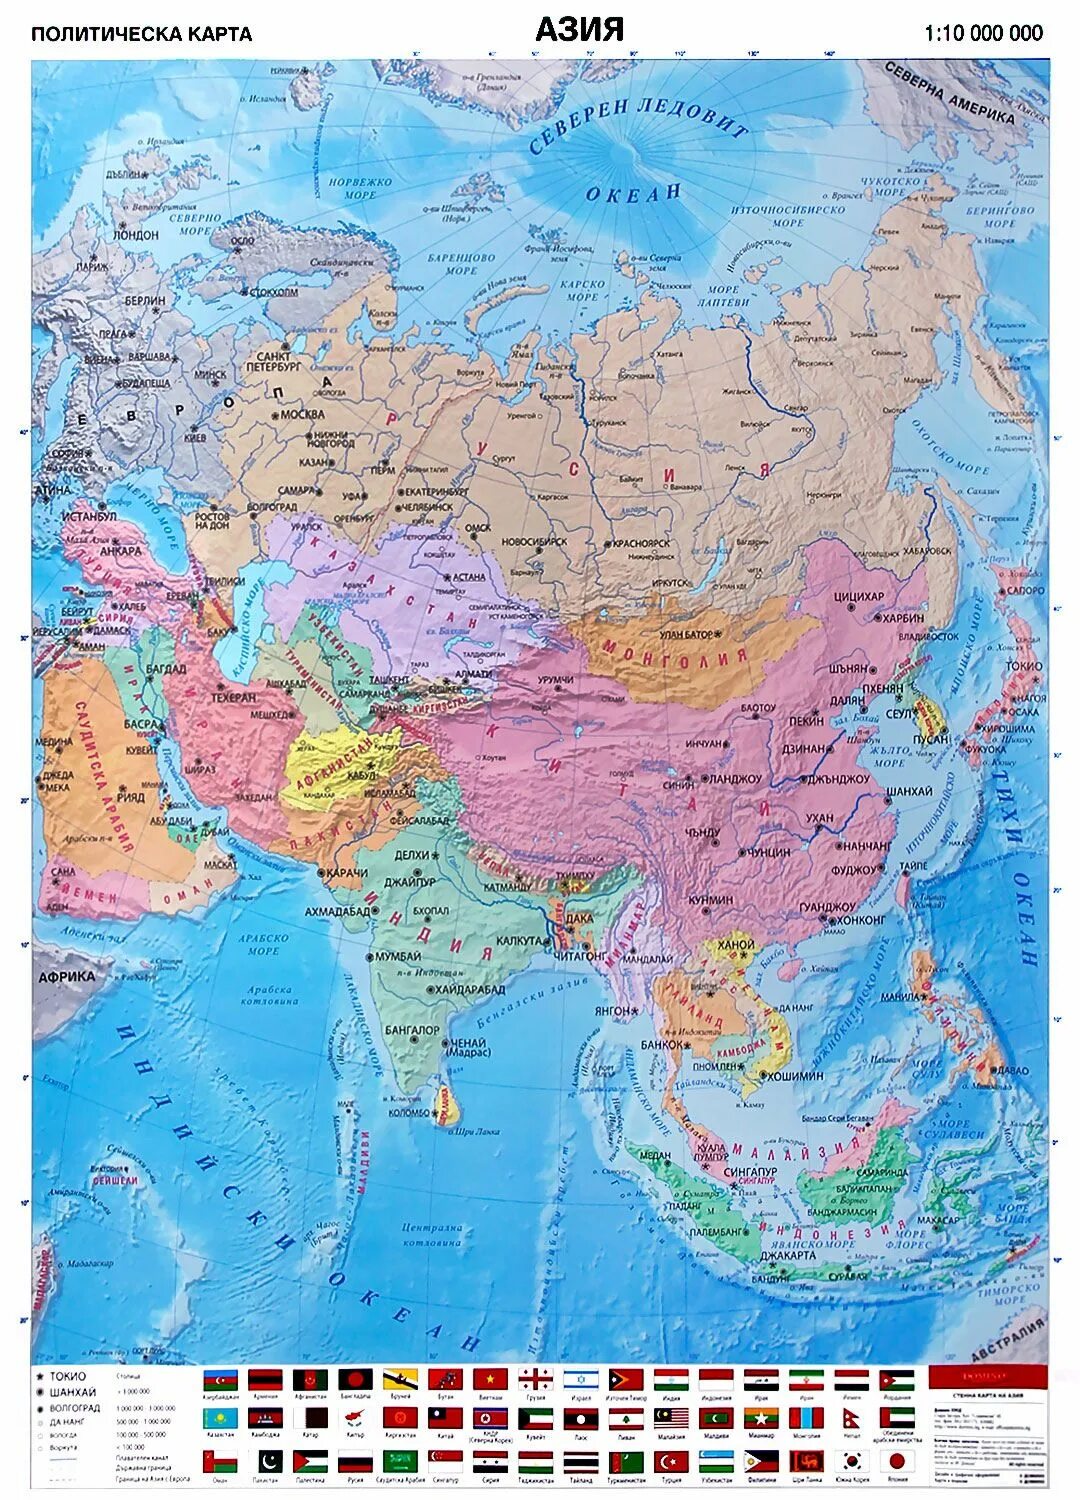 Страны азии на карте на русском языке. Карта Азии. Политическая карта Азии. Карта зарубежной Азии.